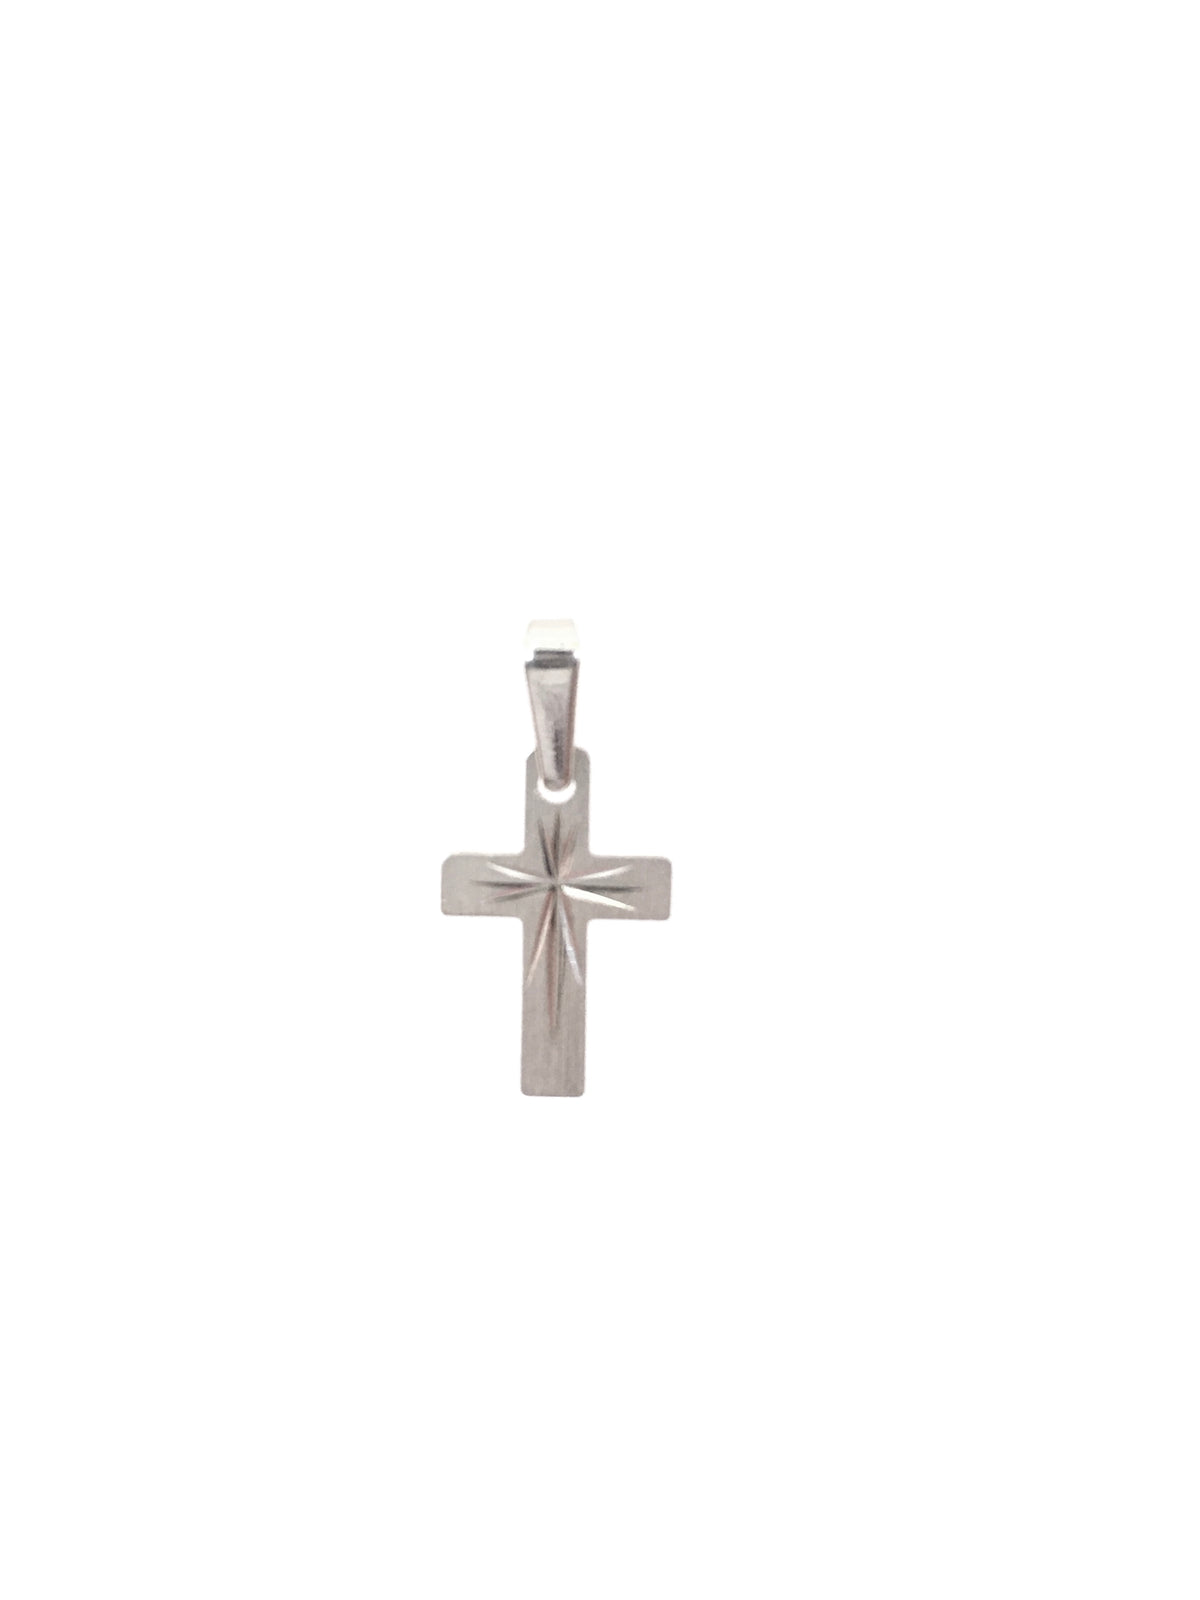 Dije de cruz central grabado en oro blanco de 10 quilates: 16 mm x 10 mm